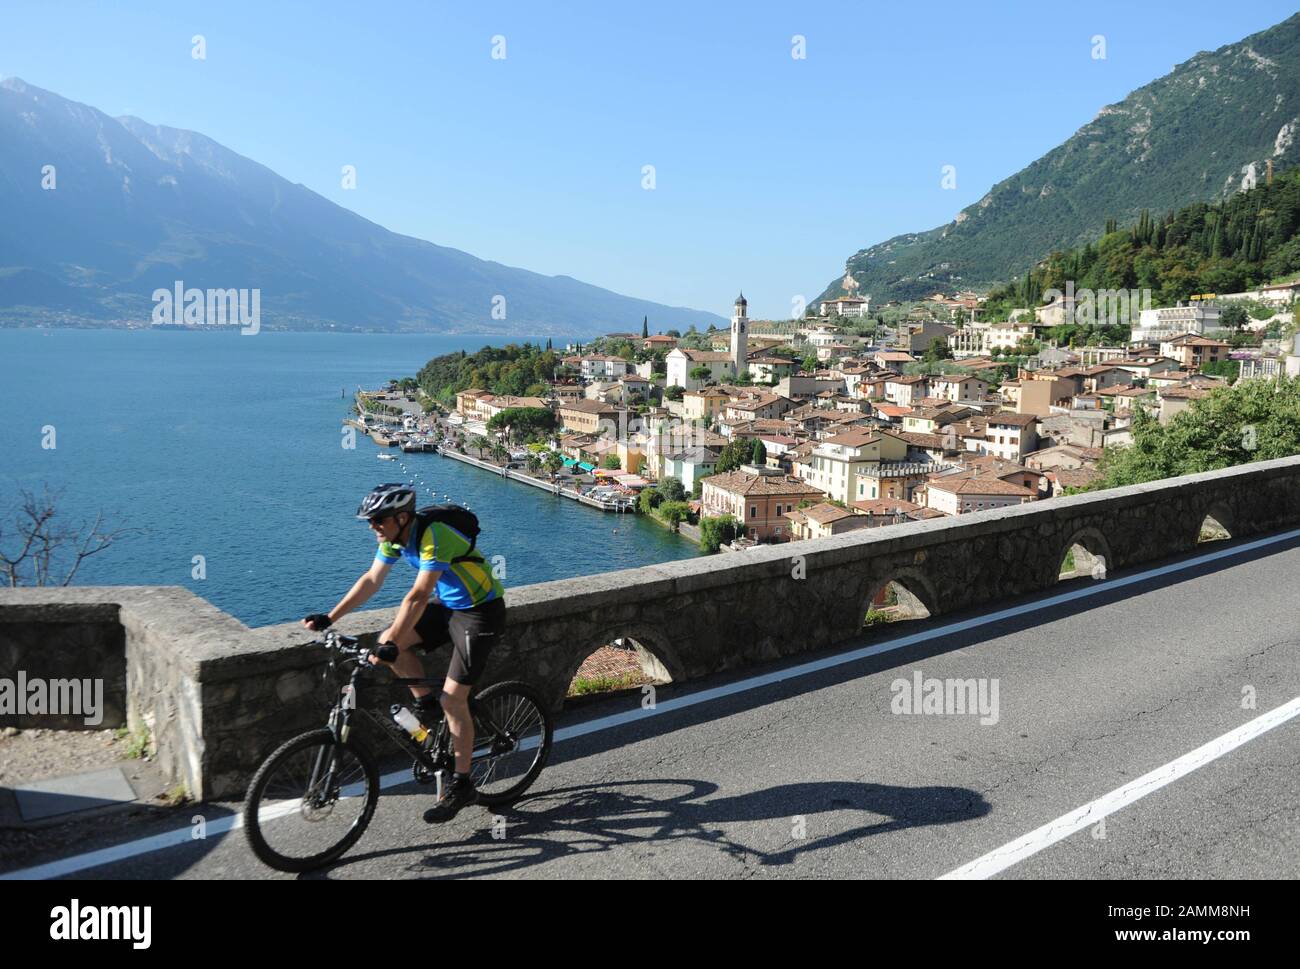 Route côtière de Riva del Garda à Salò avec vue sur le village de pêcheurs de Limone sul Garda. [traduction automatique] Banque D'Images